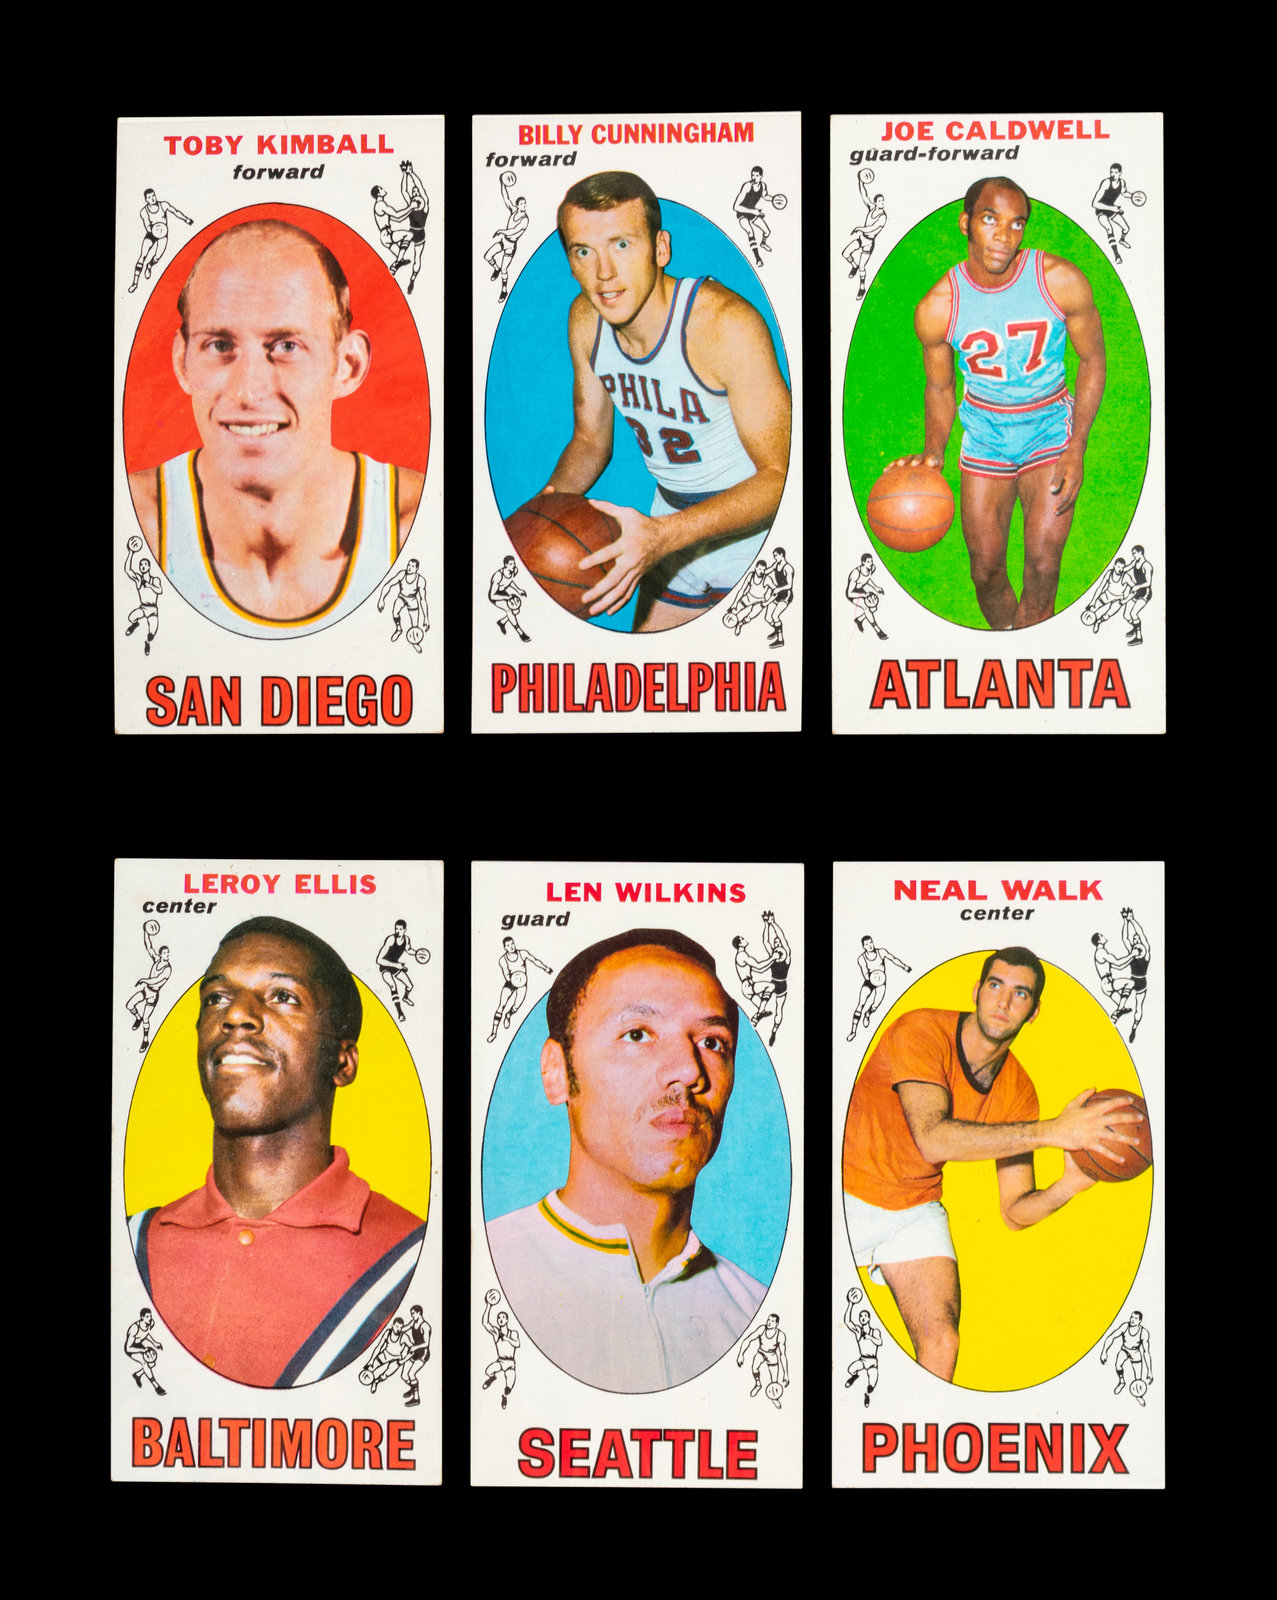 1969-70 Topps Basketball # 39 Toby Kimball San Diego (EX)